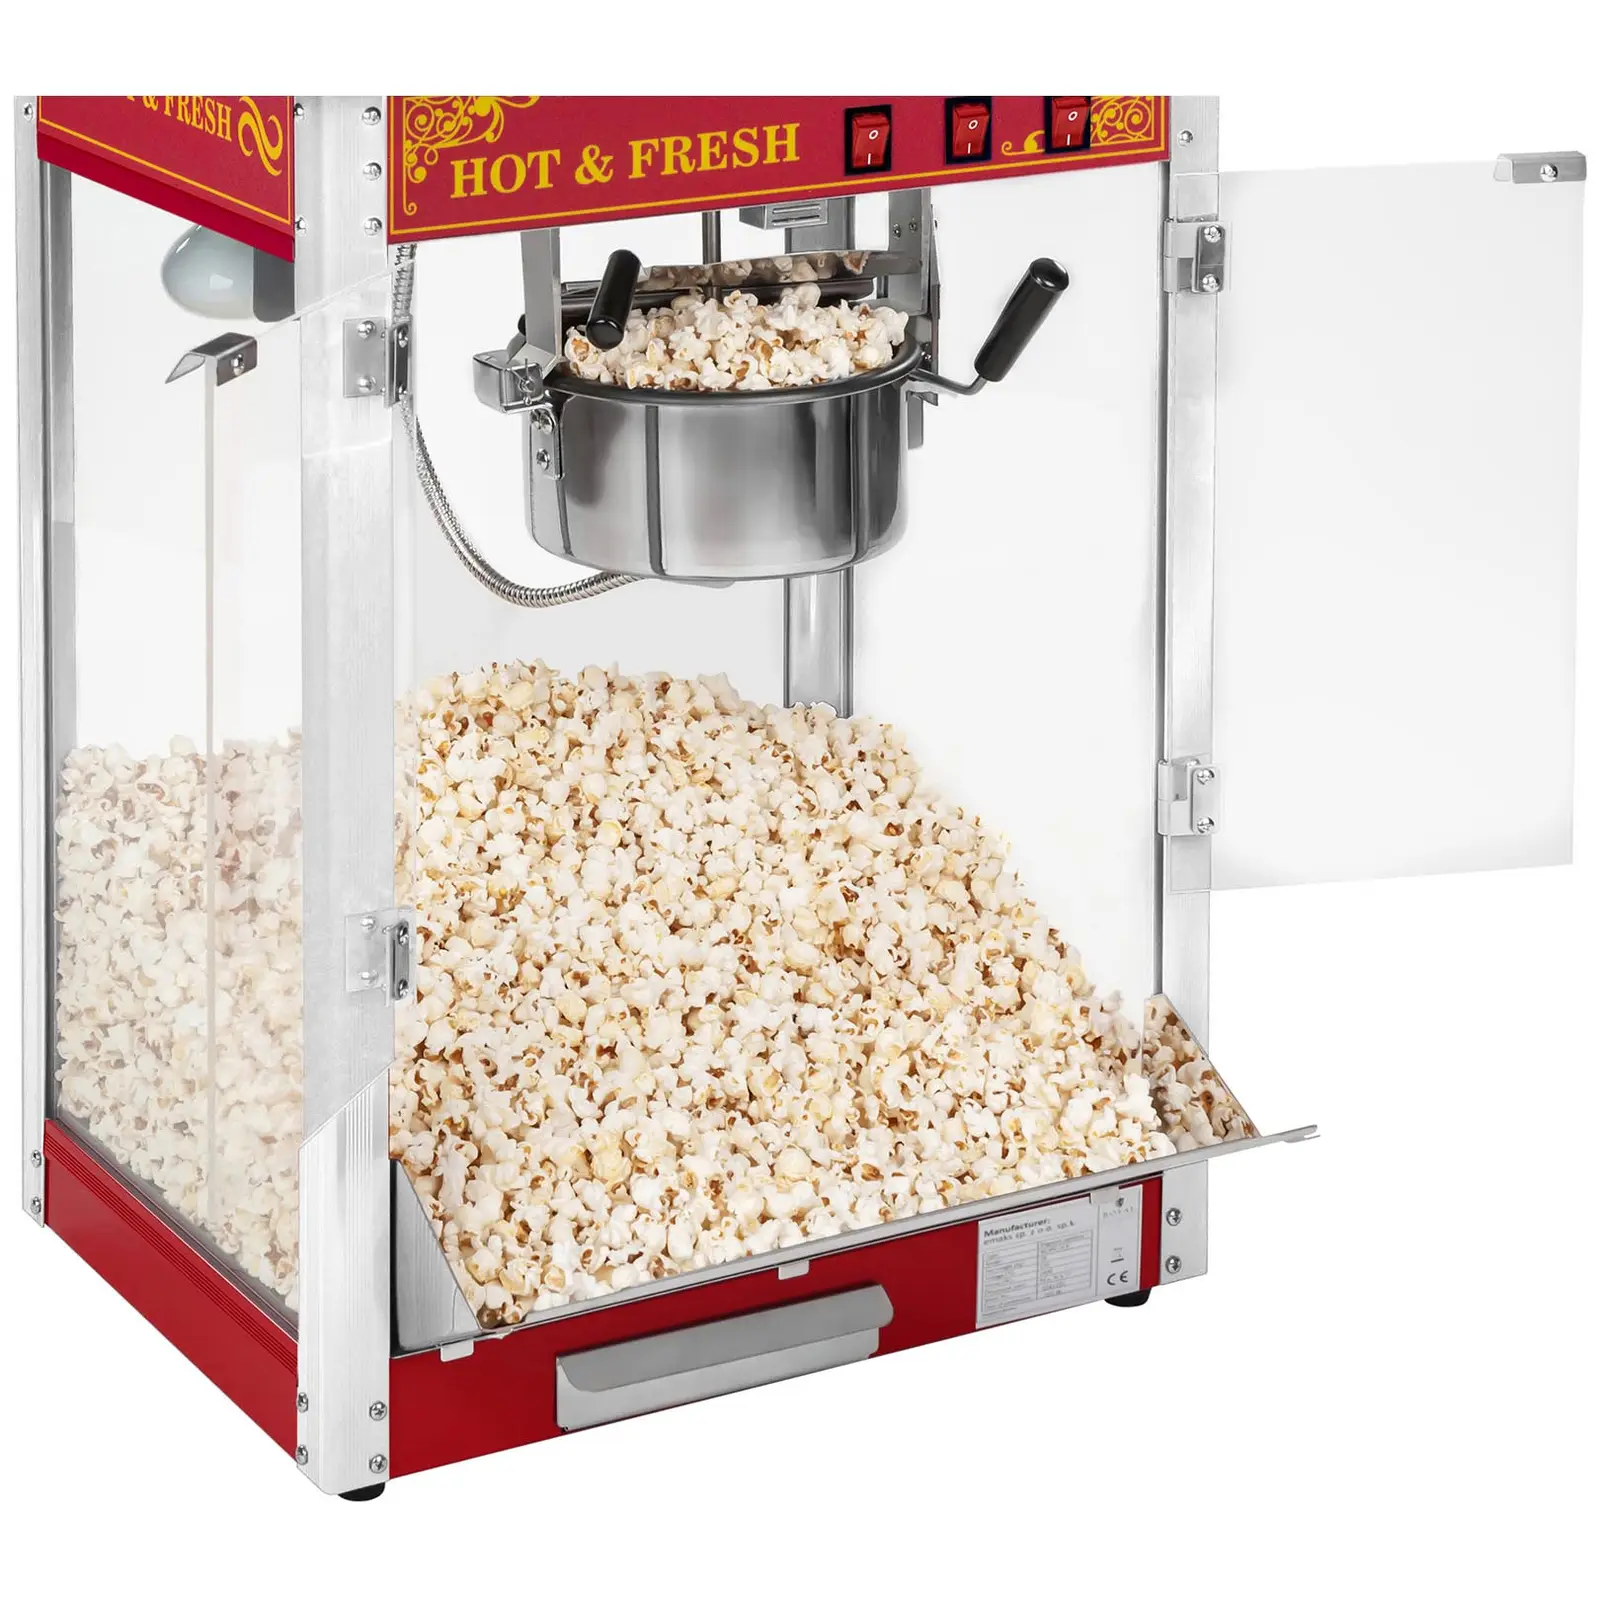 Popcornmaschine mit Wagen und LED-Beleuchtung - Retro-Design - rot